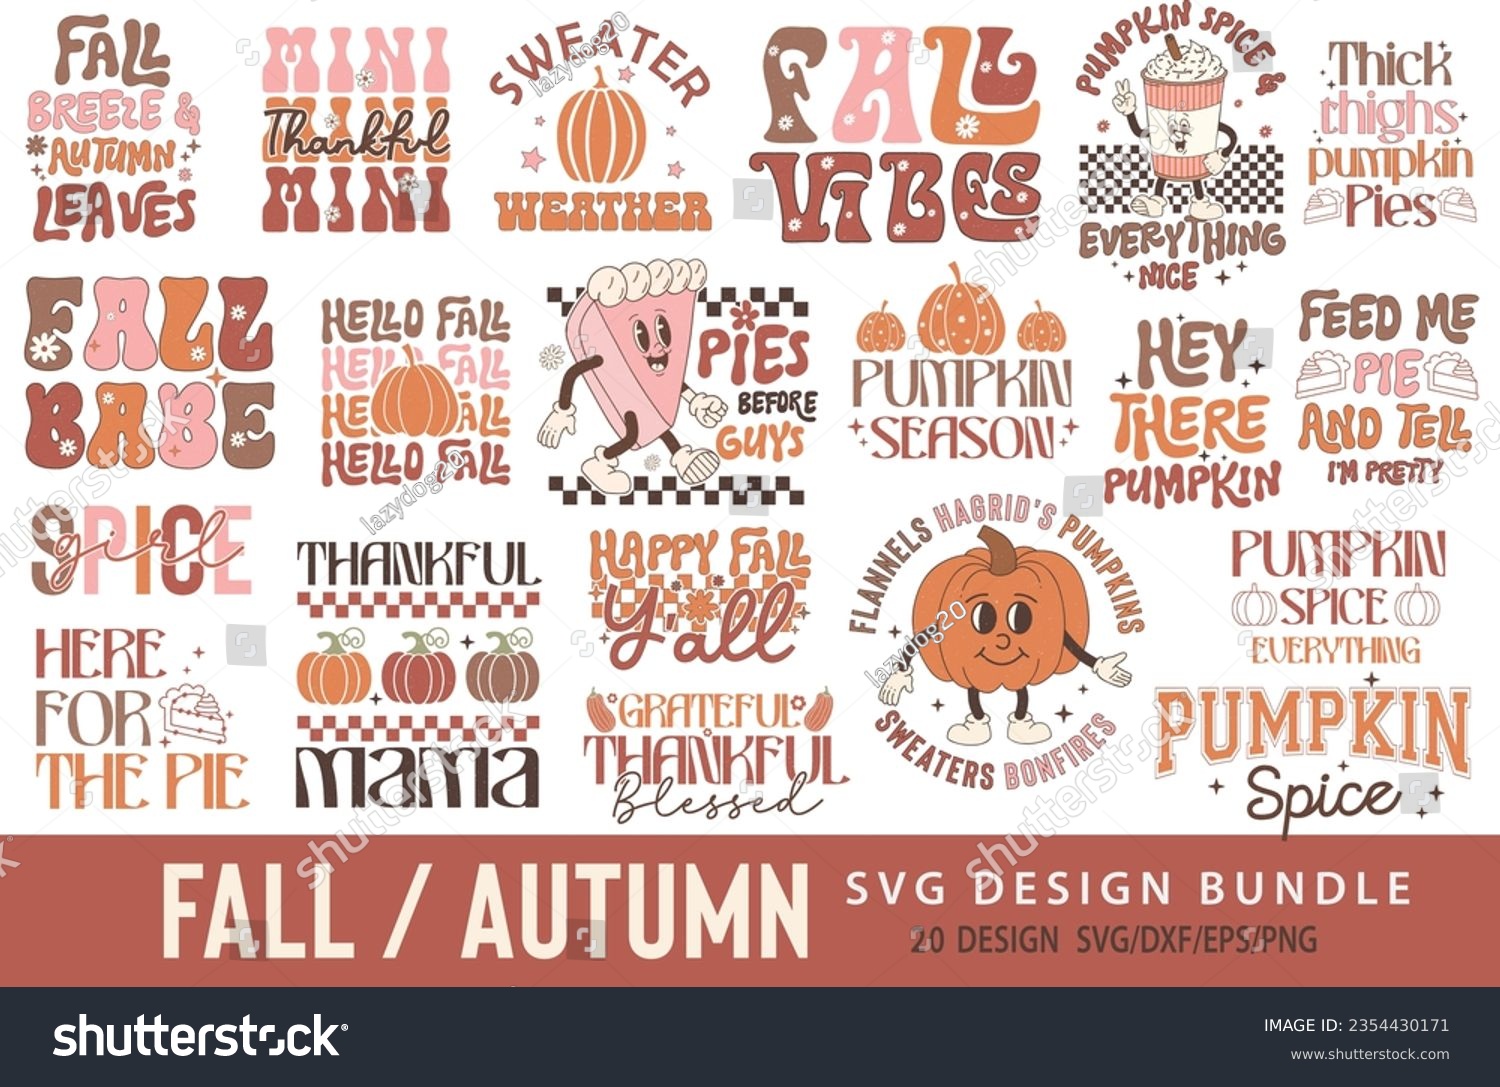 SVG of Fall SVG PNG Design Bundle svg